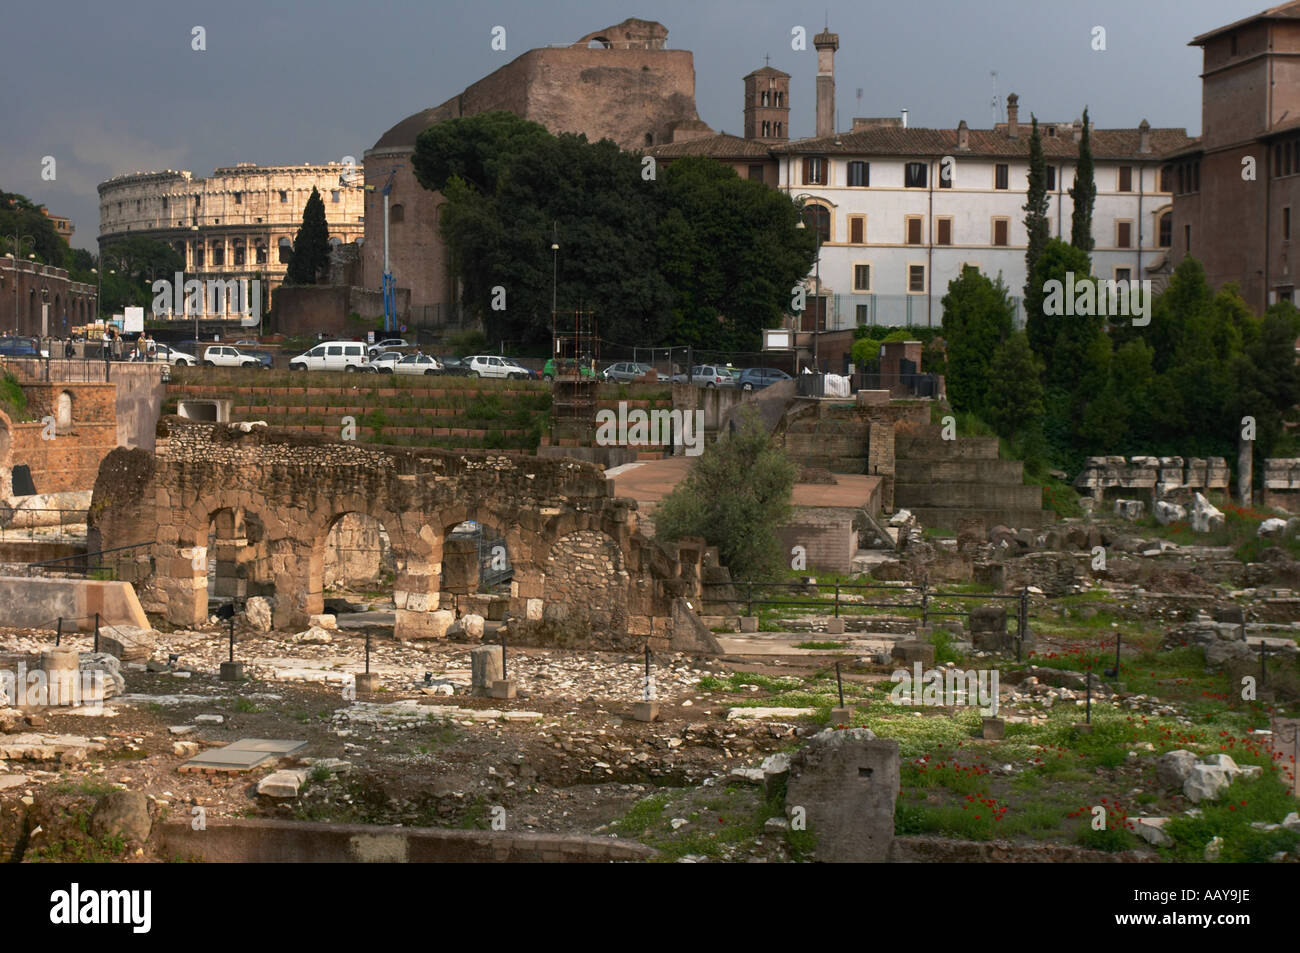 Forum romain avec Coliseum, Rome Italie Banque D'Images